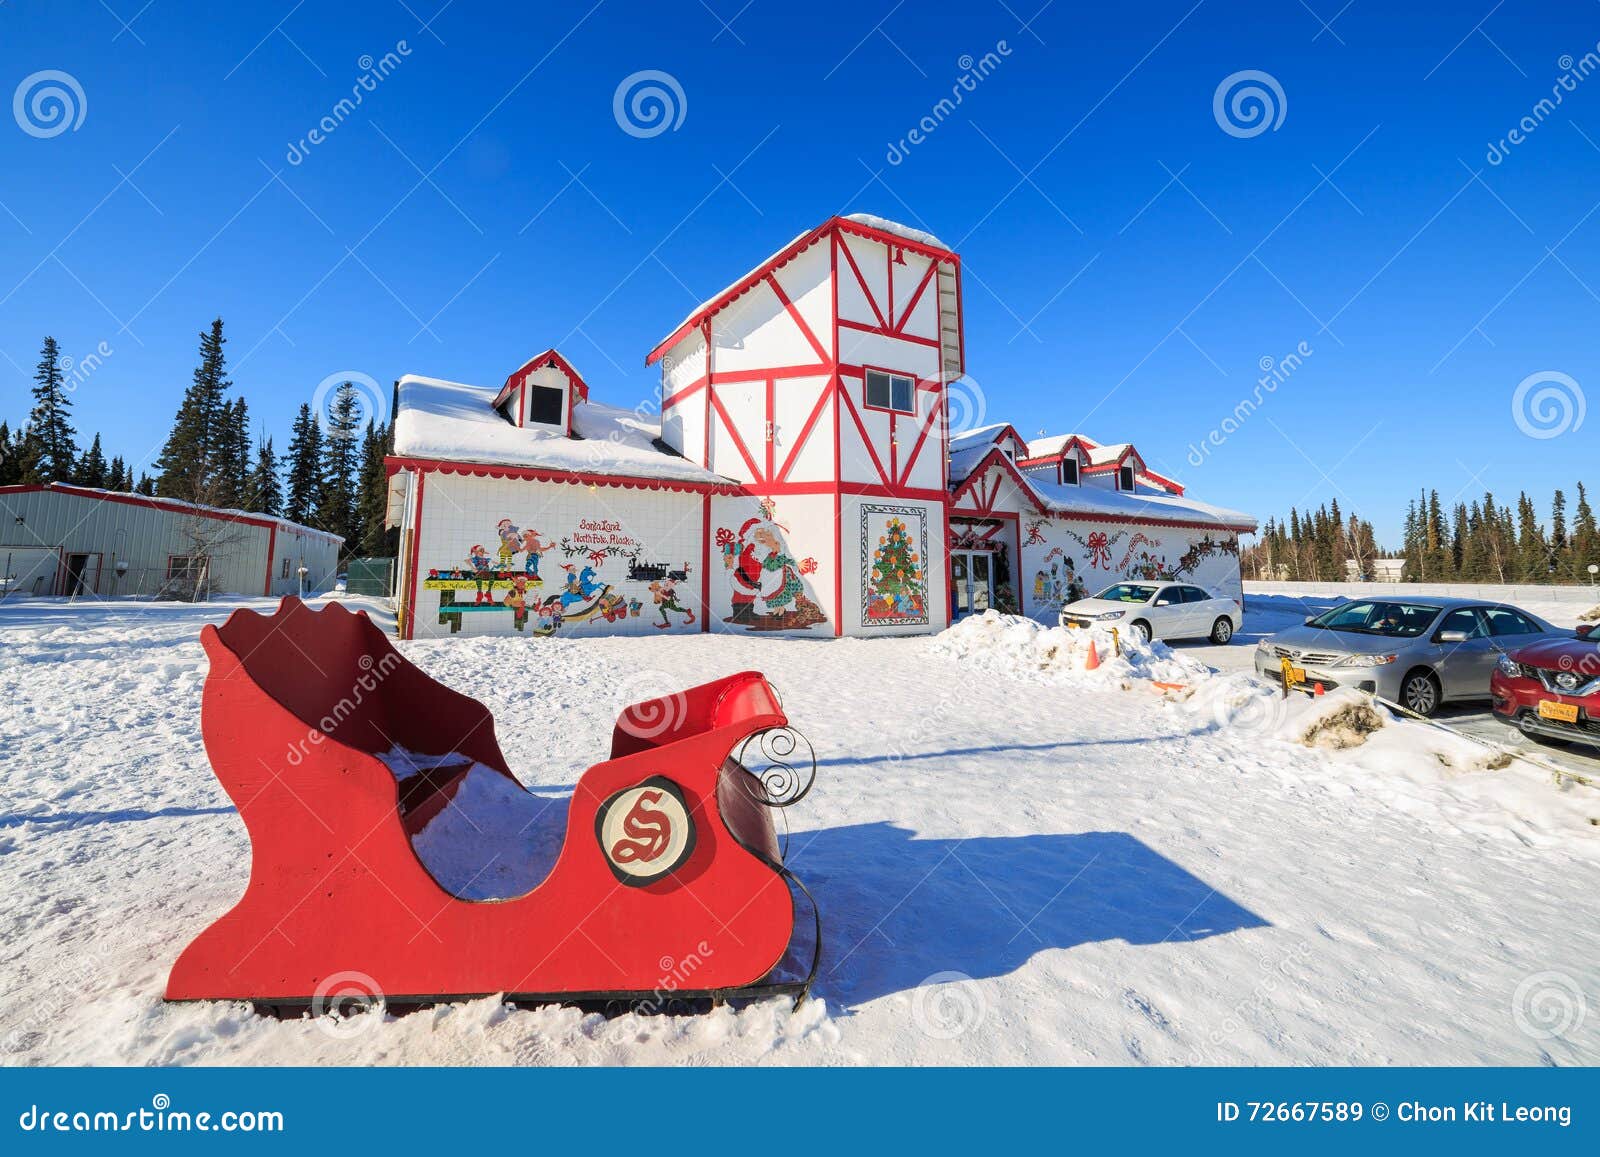 Casa Babbo Natale Polo Nord.Casa Del Babbo Natale Polo Nord Immagine Stock Editoriale Immagine Di Dichiara North 72667589